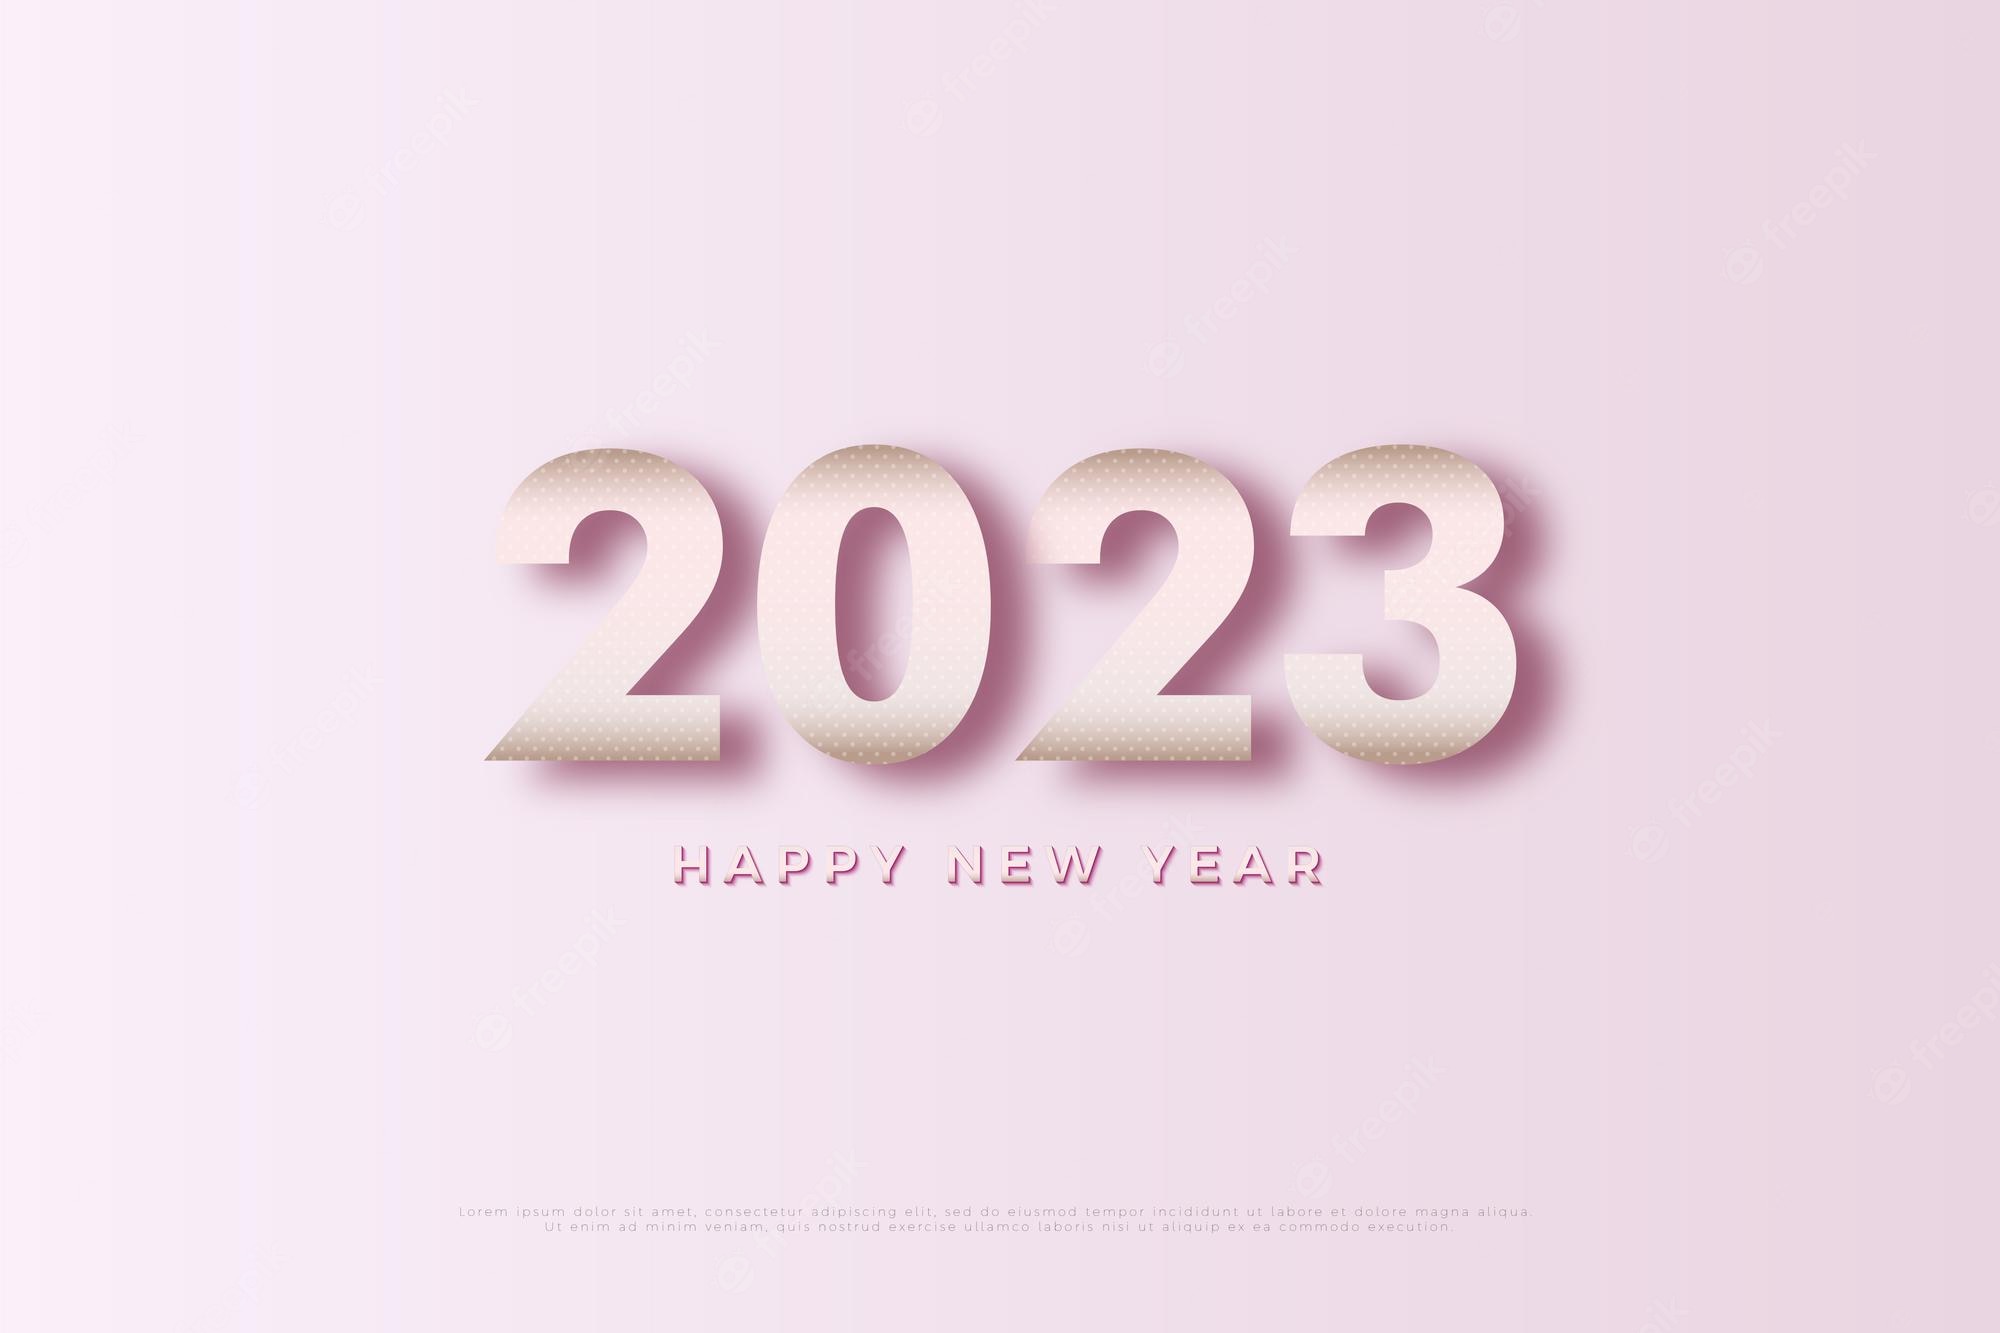 Hình nền năm mới 2024 với màu hồng tươi sáng sẽ mang lại cho điện thoại của bạn một diện mạo mới đầy phong cách và năng động. Hãy tải về và cập nhật chiếc điện thoại của bạn ngay hôm nay để được nổi bật ngay trong các bữa tiệc năm mới.